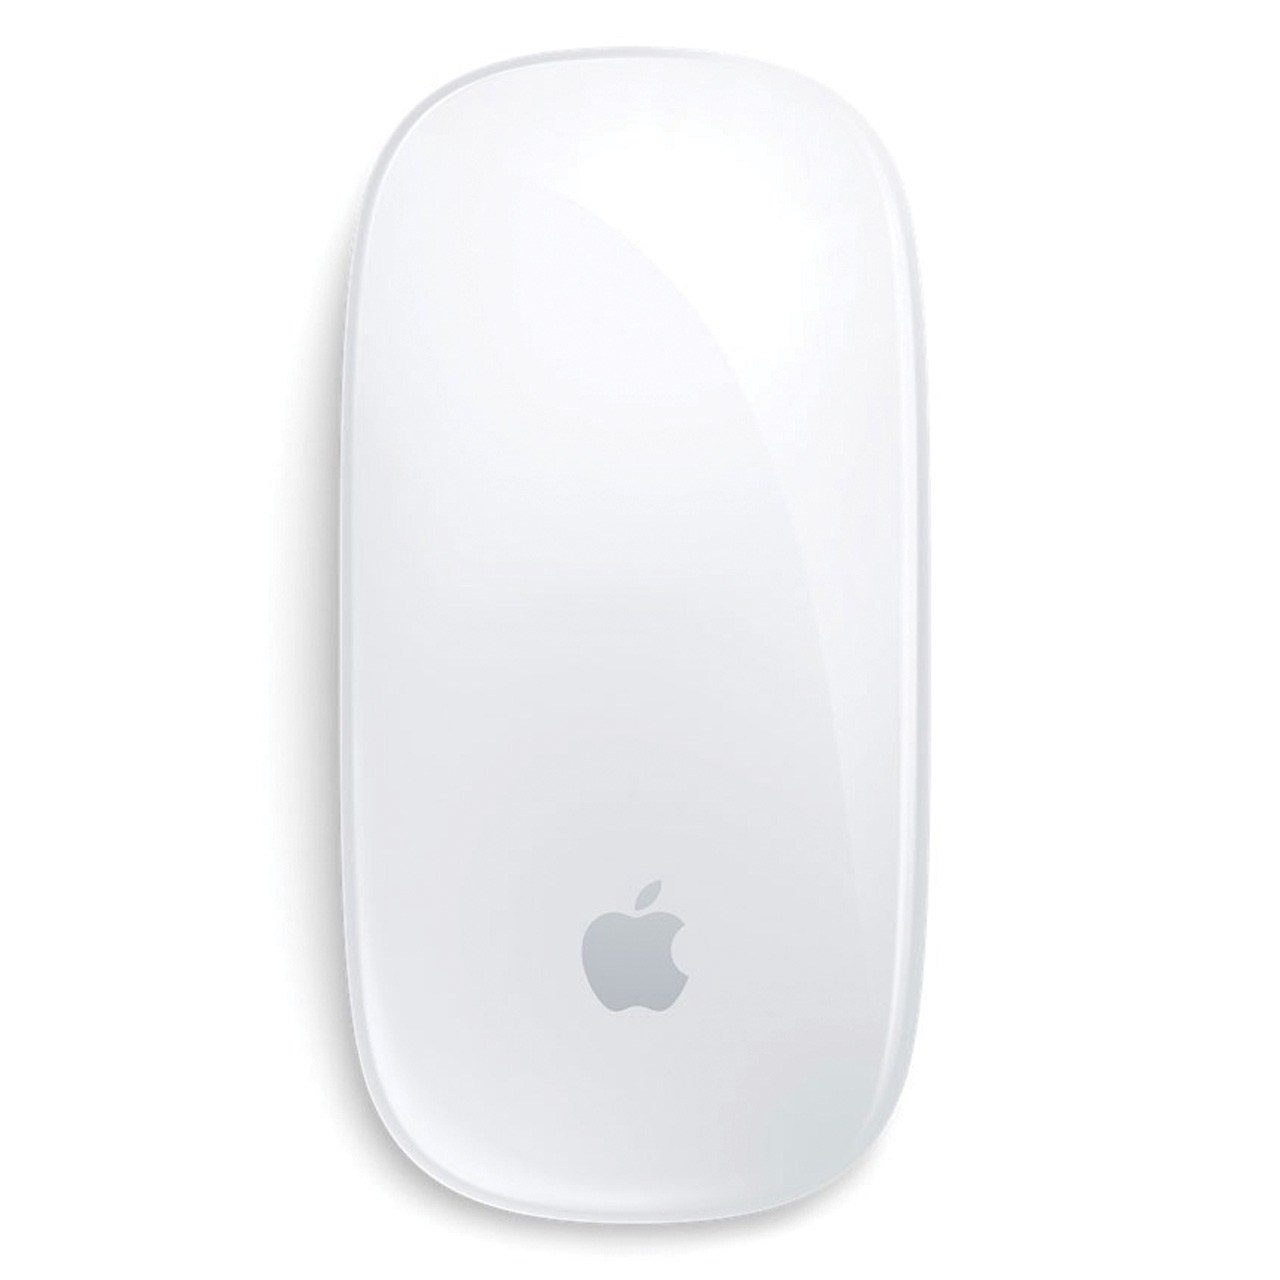 آنباکس موس بی سیم اپل مدل Magic Mouse 2 توسط رضا خونساری در تاریخ ۱۸ اردیبهشت ۱۳۹۹